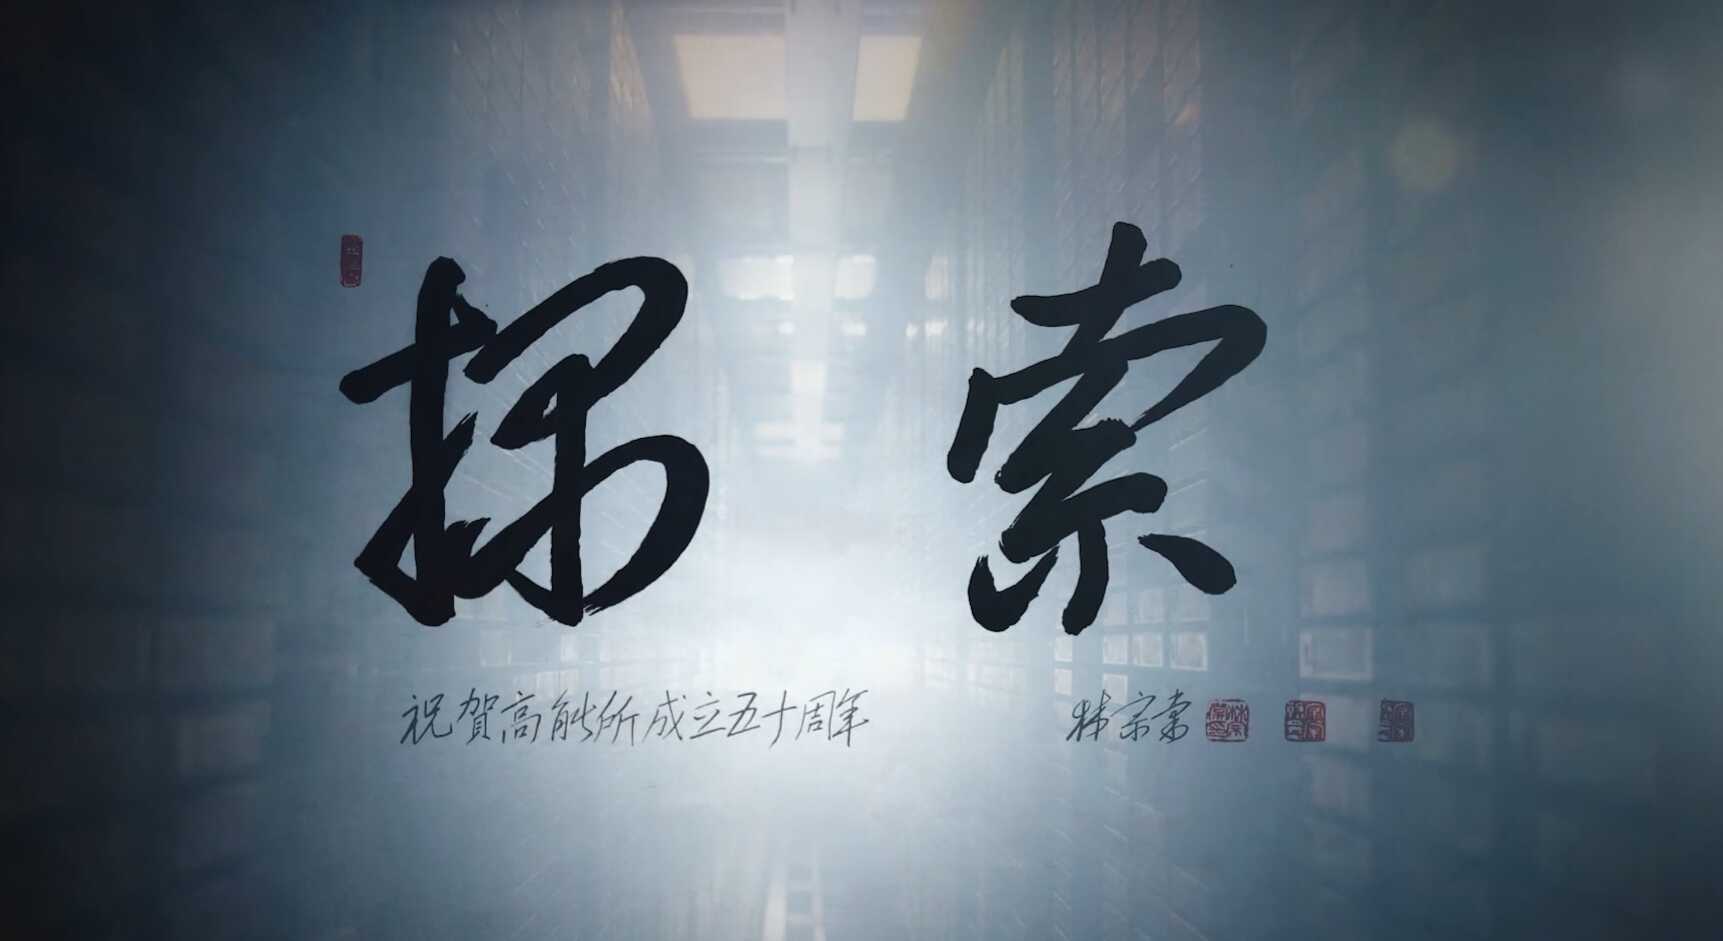 中国科学院高能所物理研究所50周年宣传片